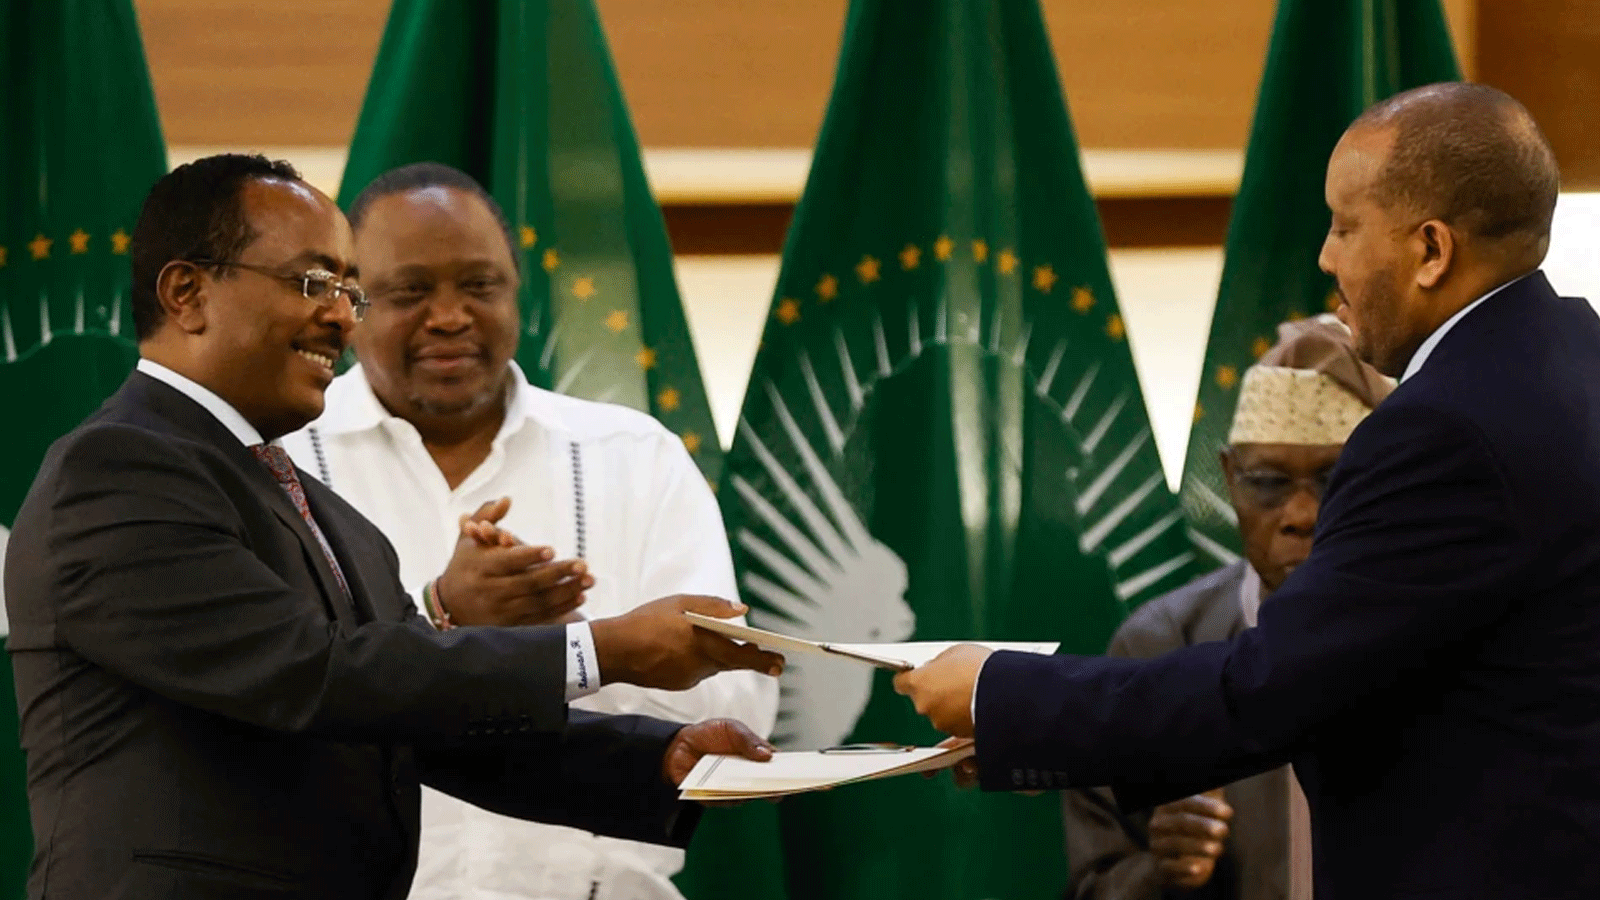  رضوان حسين راميتو (يسار)، ممثل الحكومة الإثيوبية، وغيتاشيو رضا (يمين)، ممثل جبهة تحرير تيغراي الشعبية، يتبادلان الوثائق بعد توقيع اتفاق سلام بين الطرفين. 2 تشرين الثاني\نوفمبر 2022.